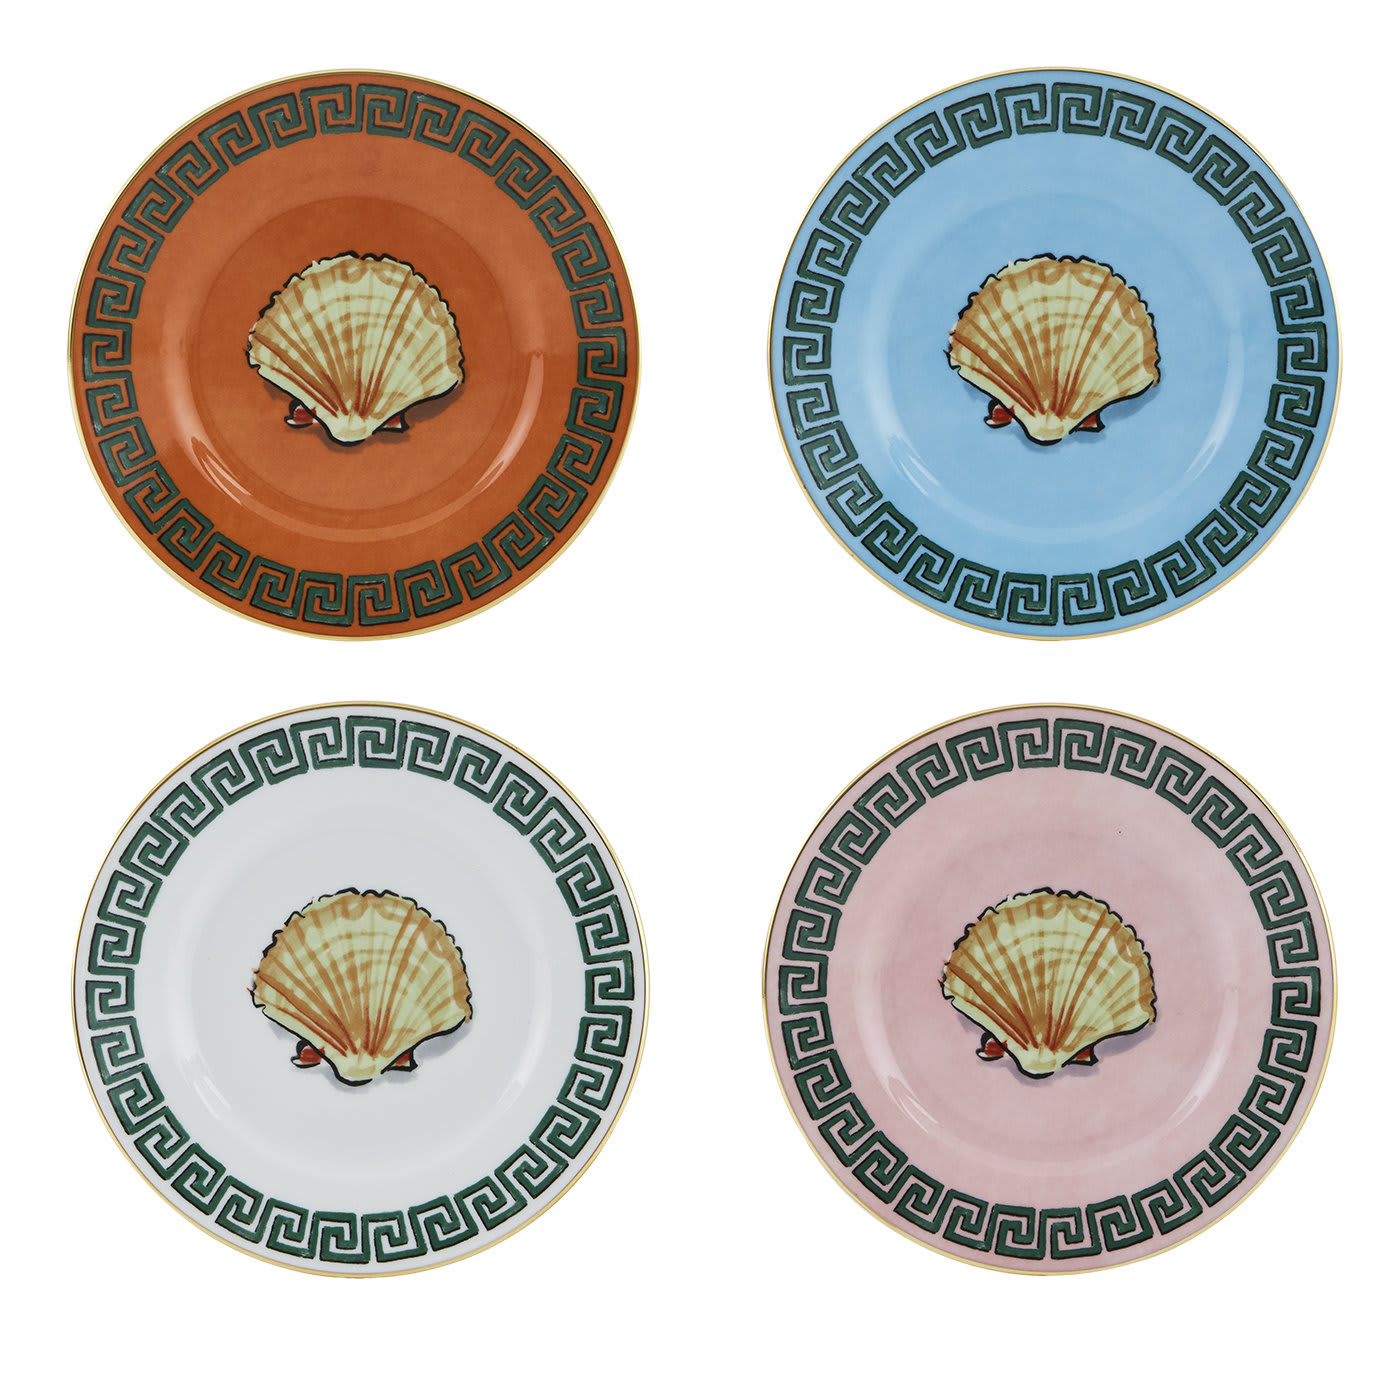 Il Viaggio di Nettuno Set of 4 Bread Plates by Luke Edward Hall - GINORI 1735